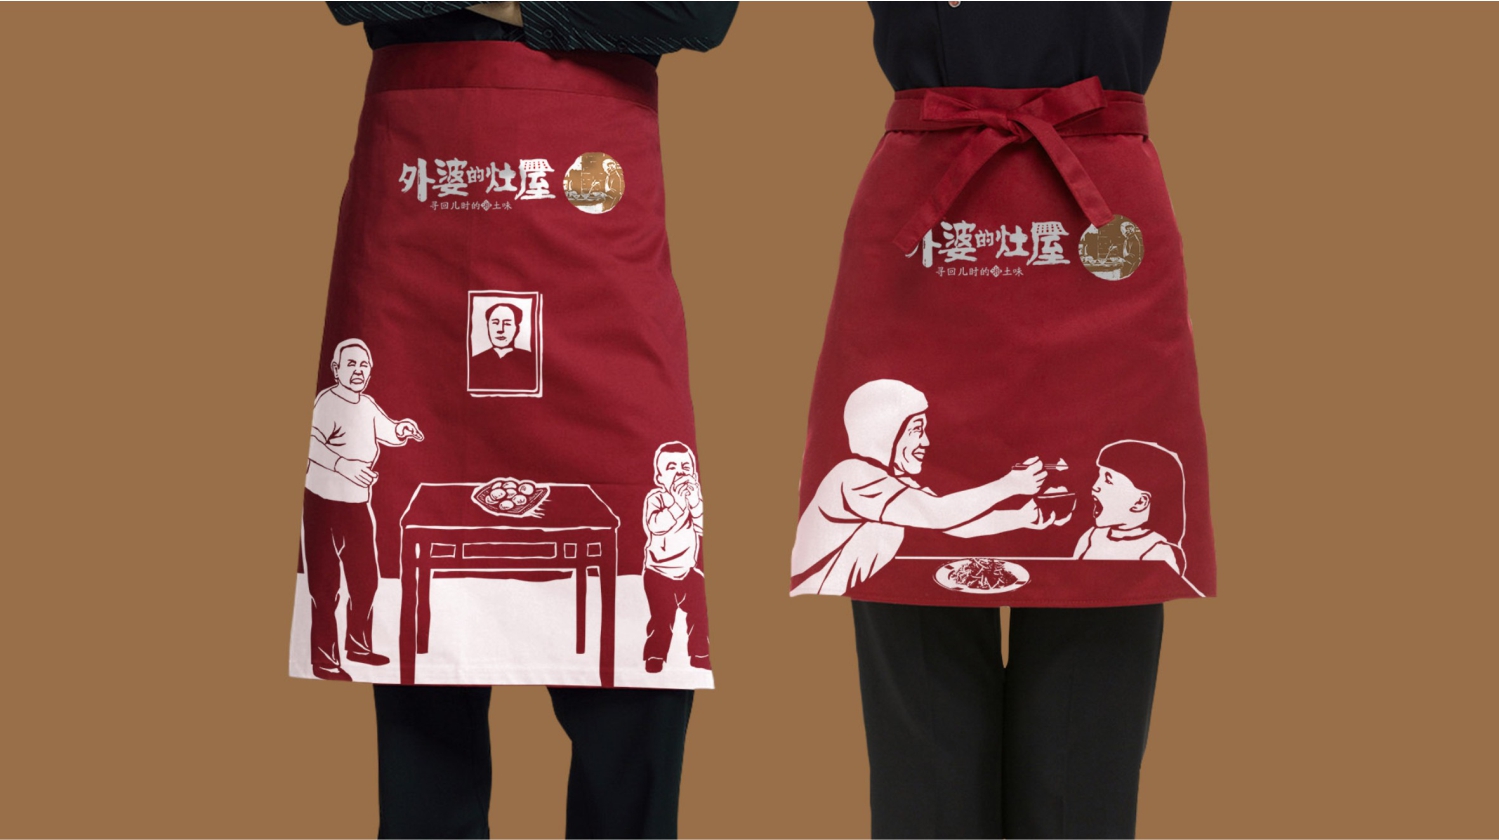 湖北湘菜连锁餐饮品牌外婆的灶屋工作服设计